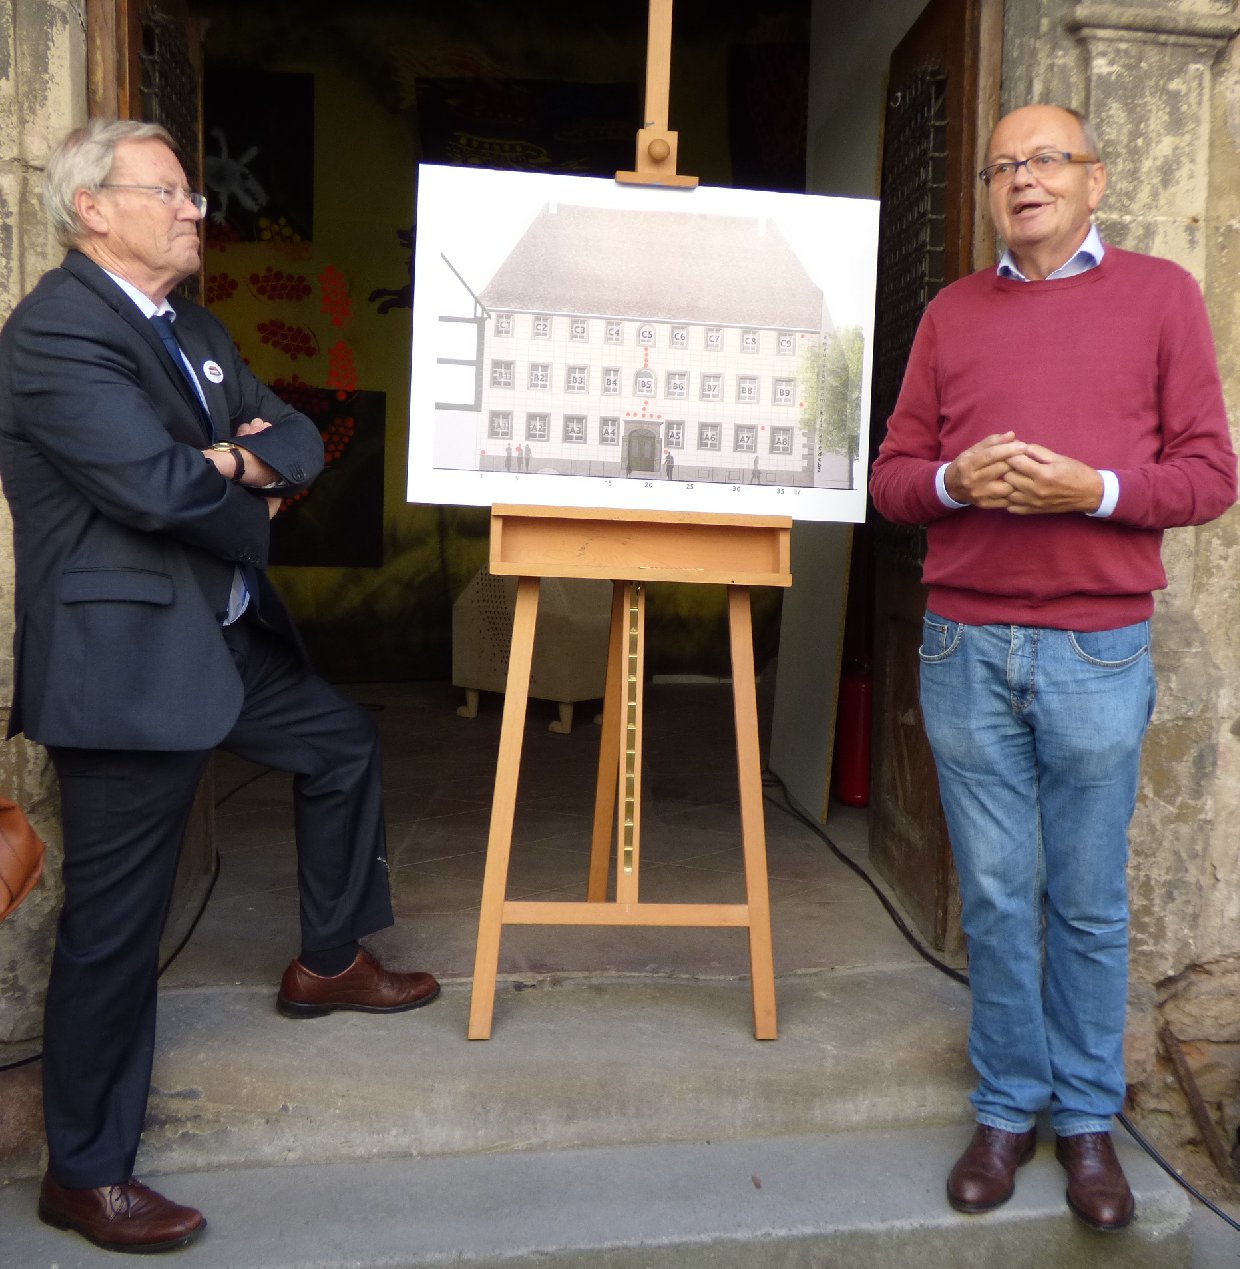 Dr. Karl-Heinz-Rothenberger und Dr. Michael Zumpe stellen die Bausteinaktion vor. Foto: Pfalz-Express/Ahme